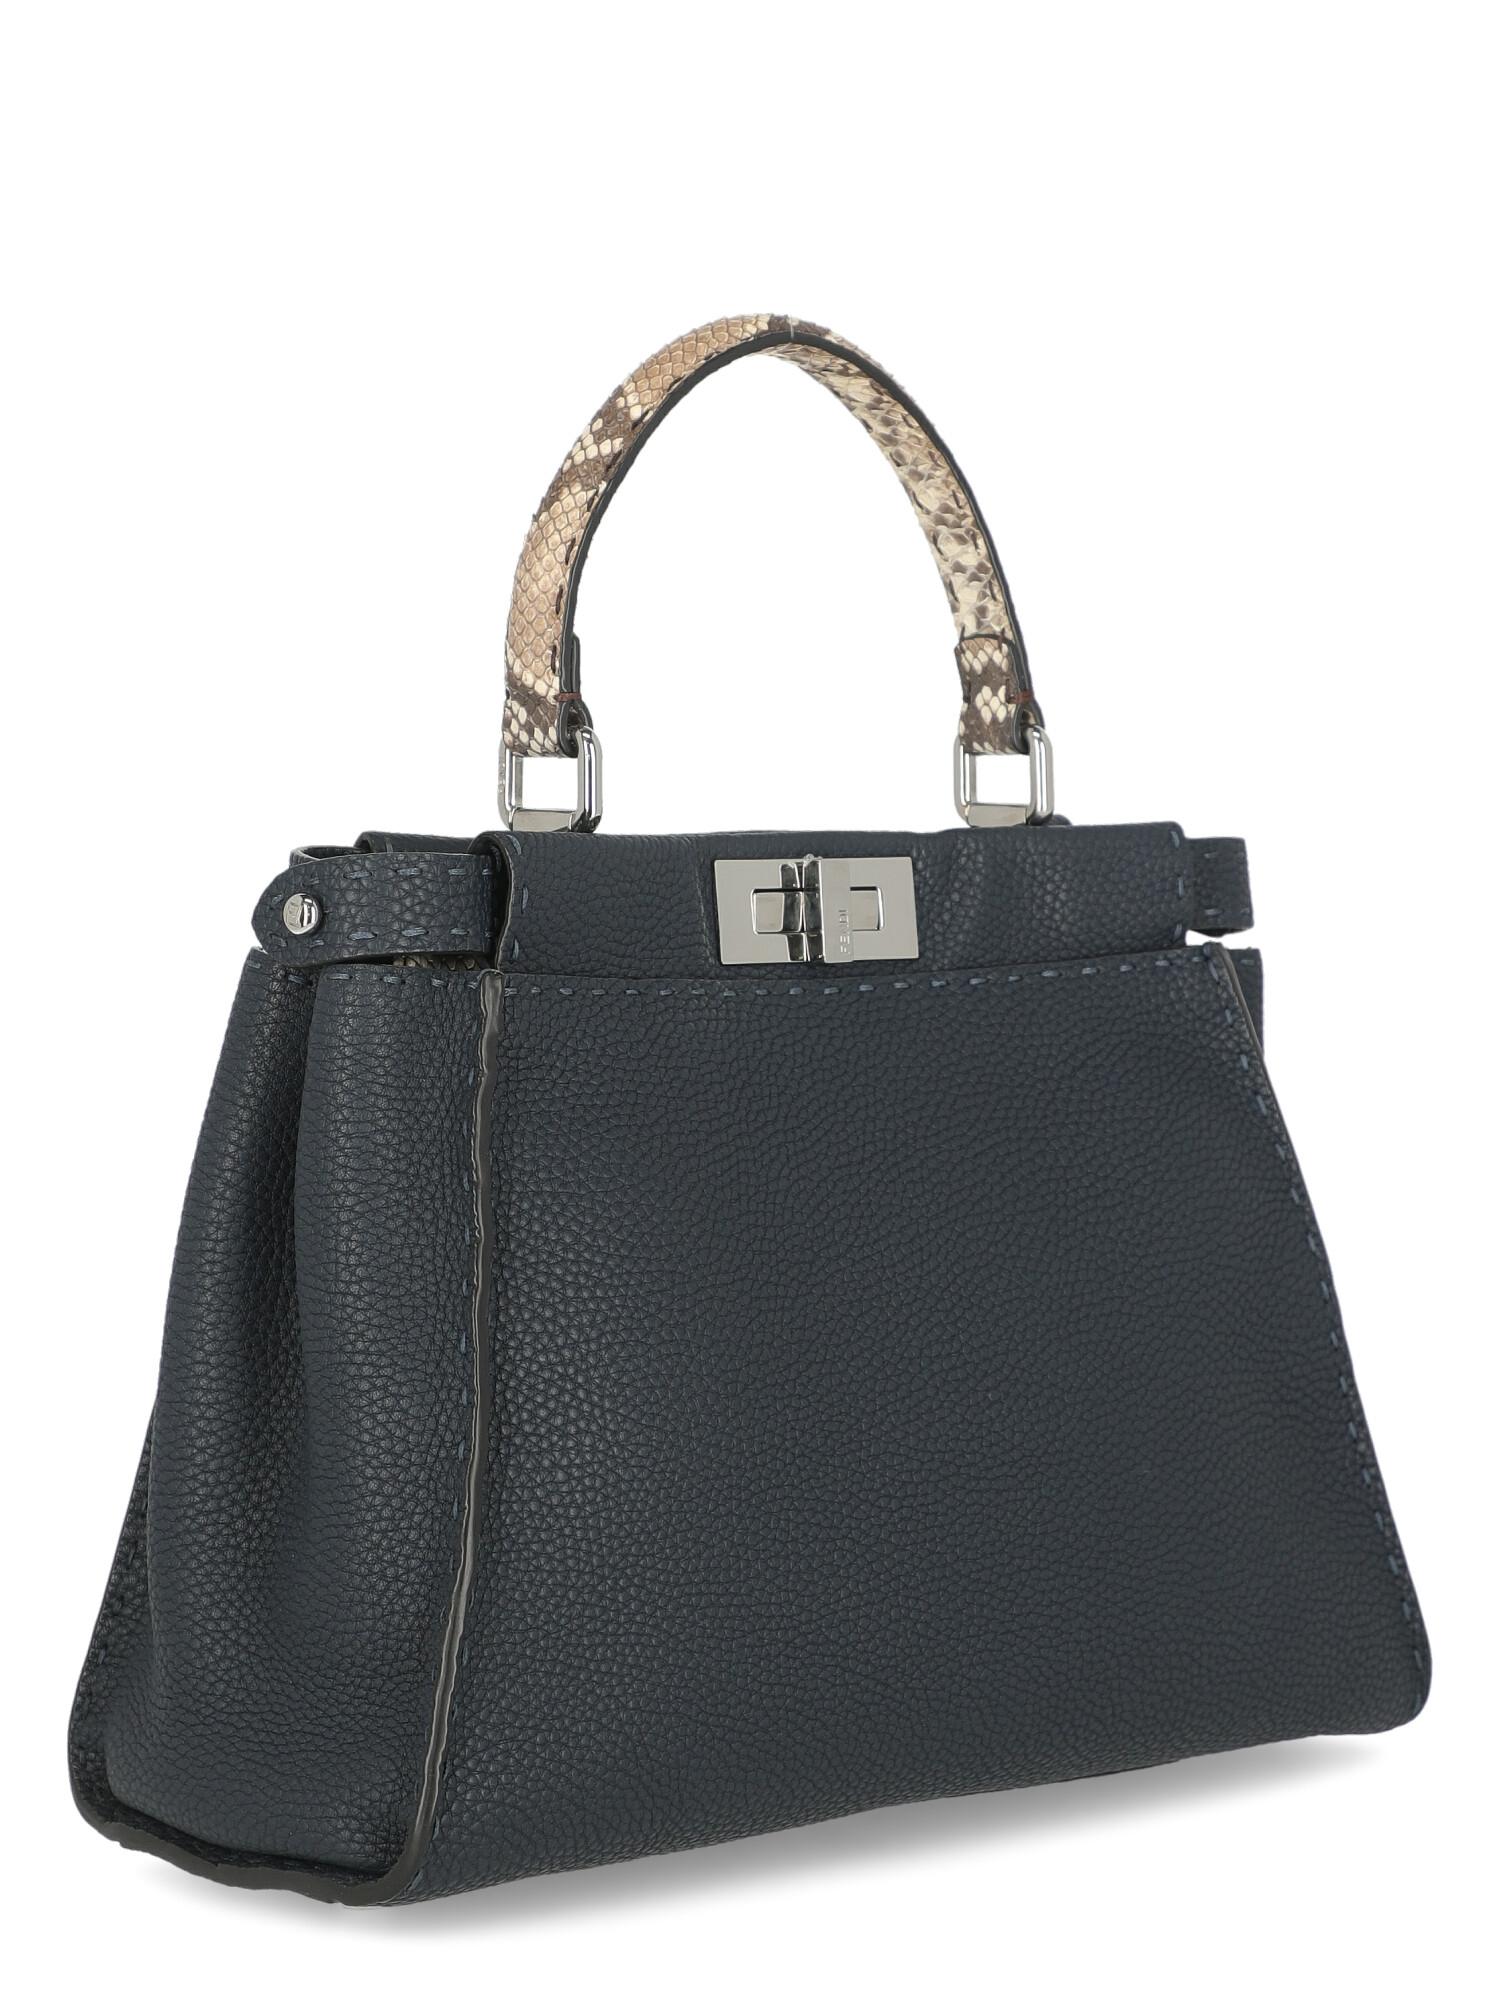 Black Fendi Women's Handbag Peekaboo Beige/Navy Leather For Sale